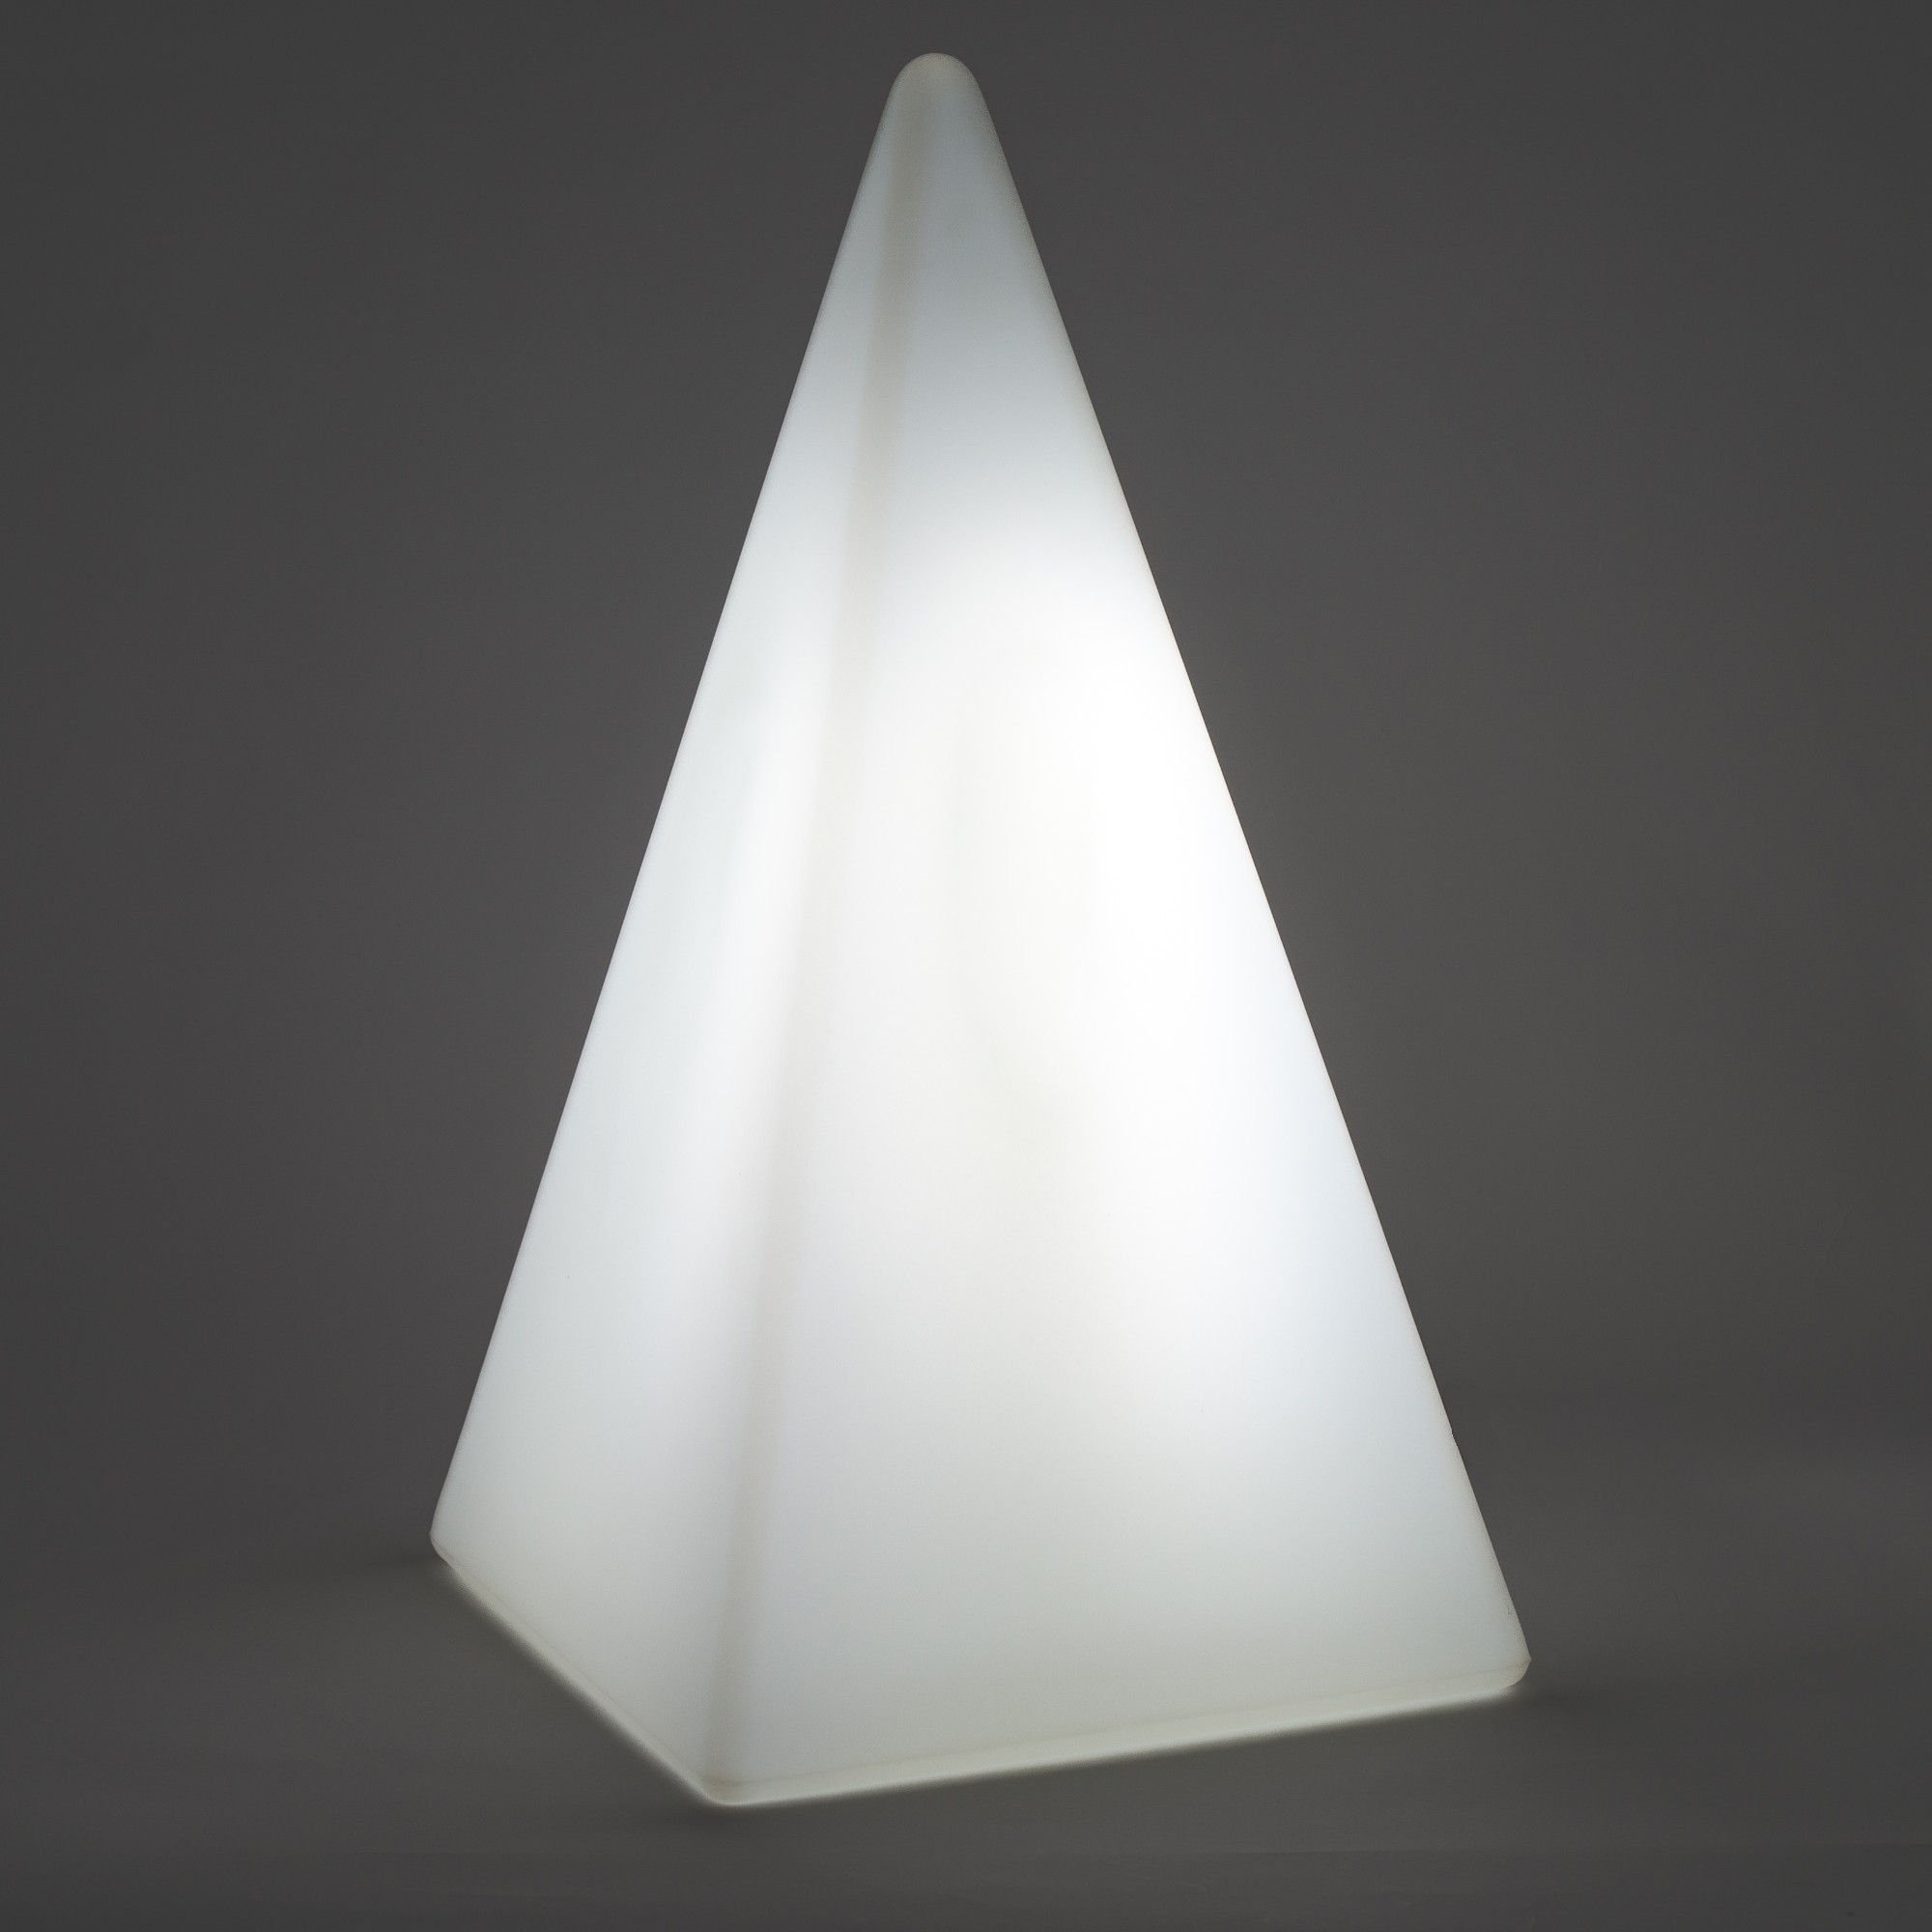 70204 Standleuchte Pyramide 54 cm der Firma EPSTEIN Design Leuchten